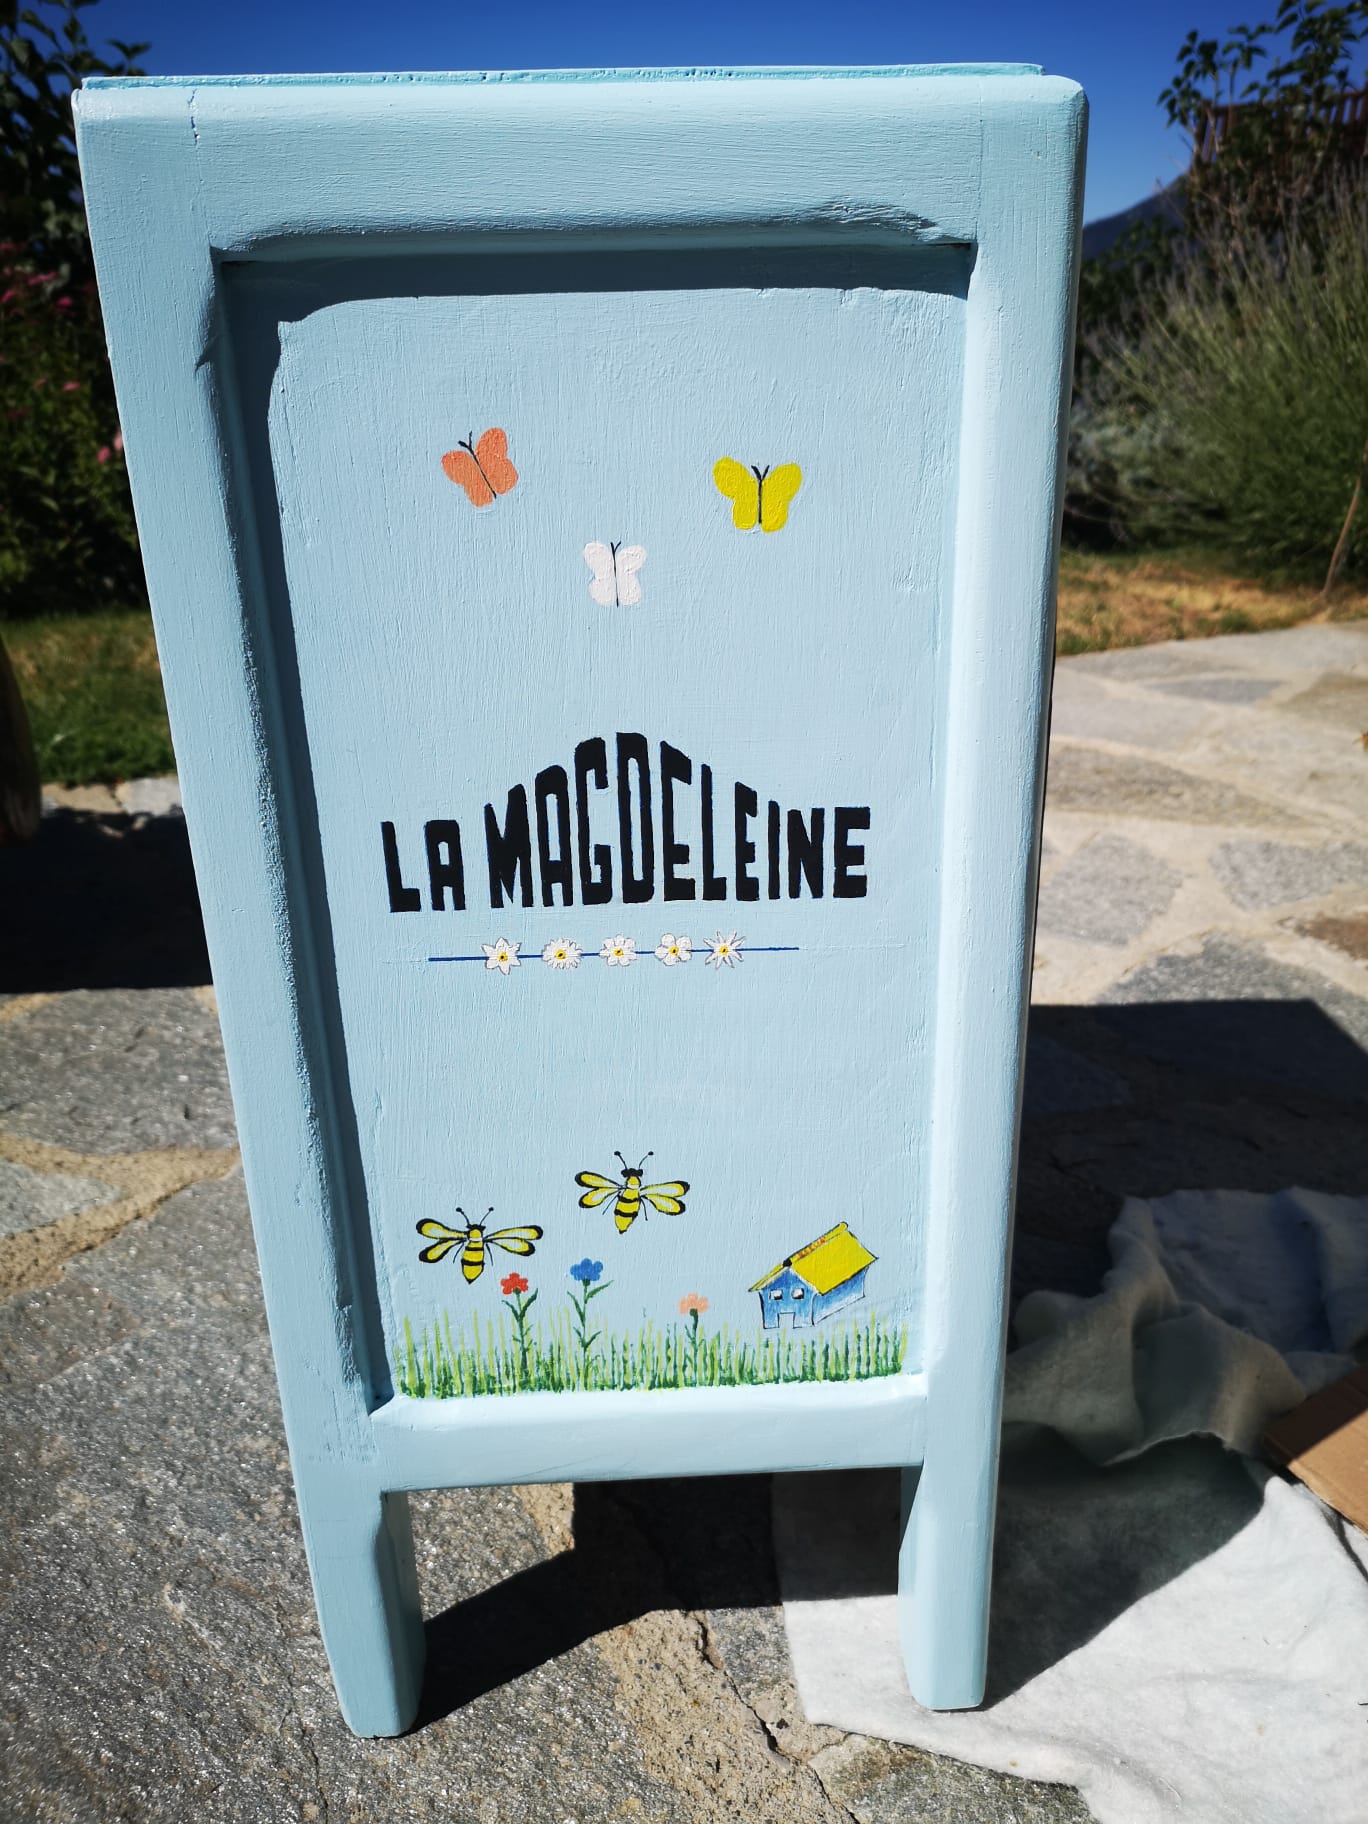 A La Magdeleine, 4 postazioni di bookcrossing